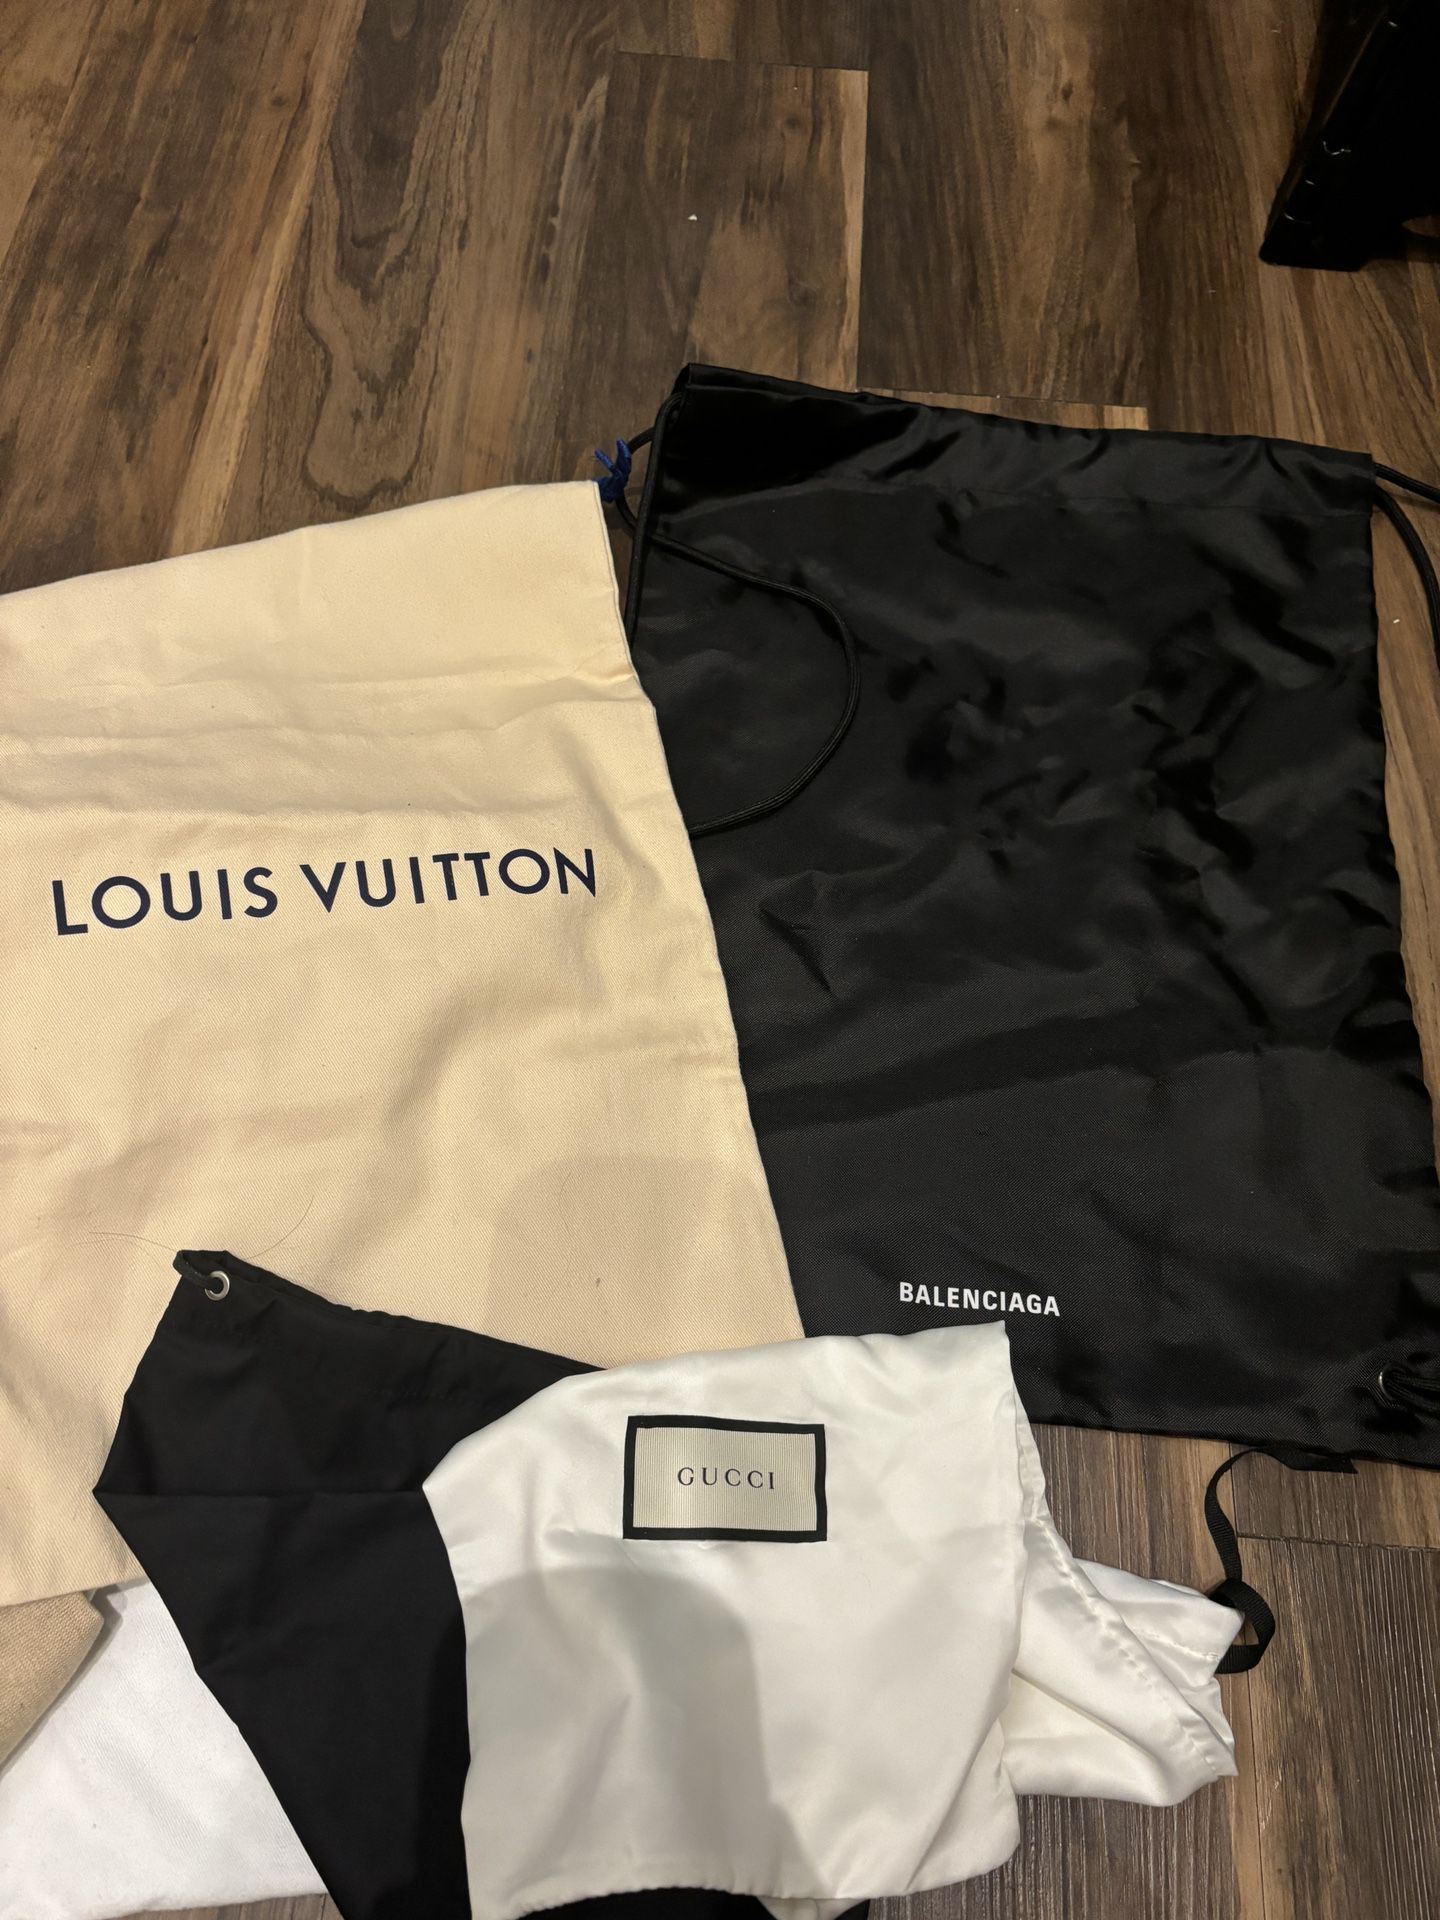 Gucci Louis Vuitton designer dust bags